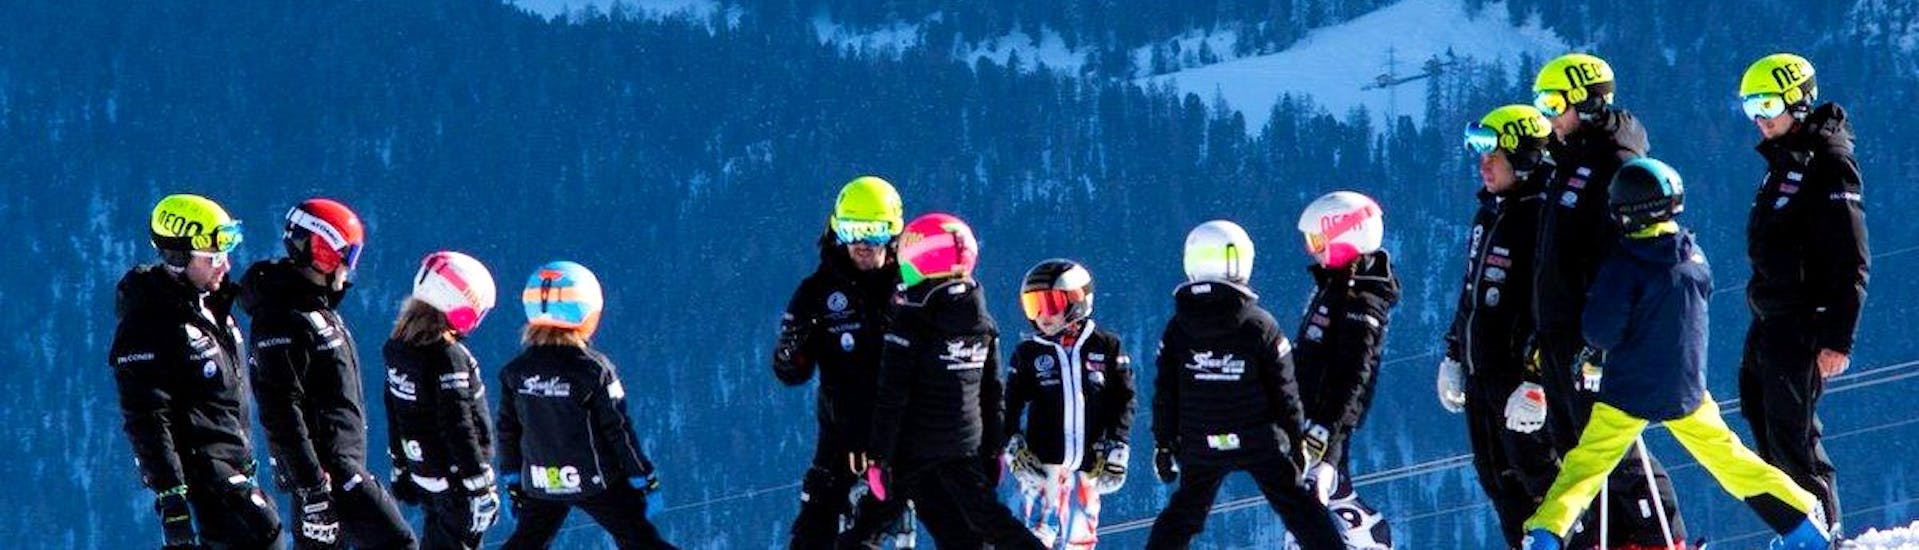 Gruppi di bambini si divertono sulle piste durante le lezioni private di sci per bambini con Giorgio Rocca Academy a Crans-Montana.